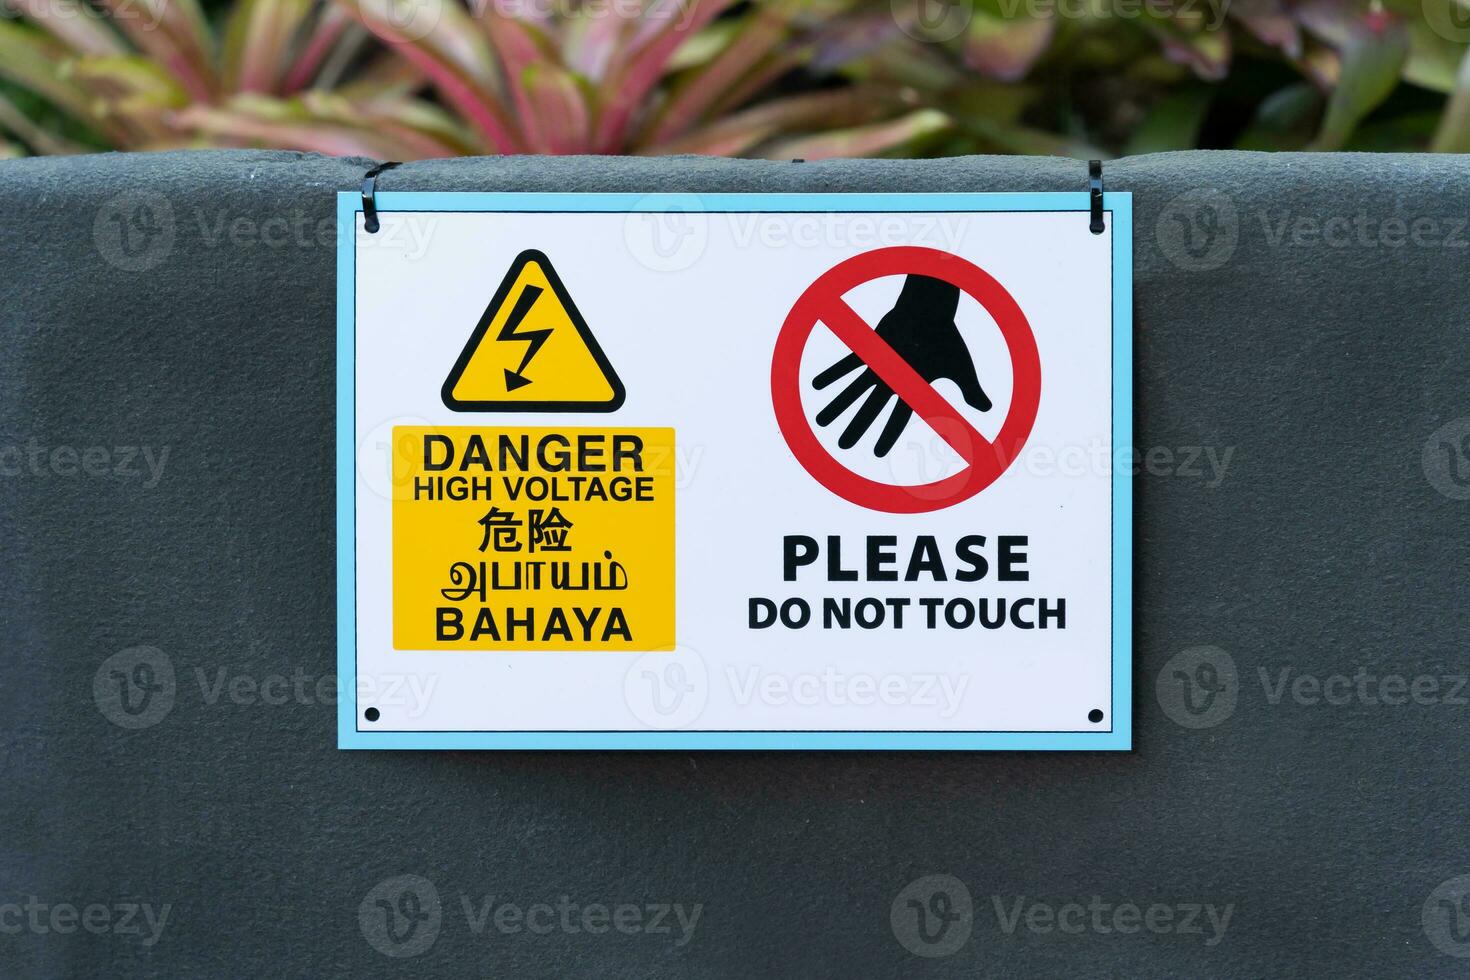 Pericolo alto voltaggio, per favore fare non toccare cartello foto